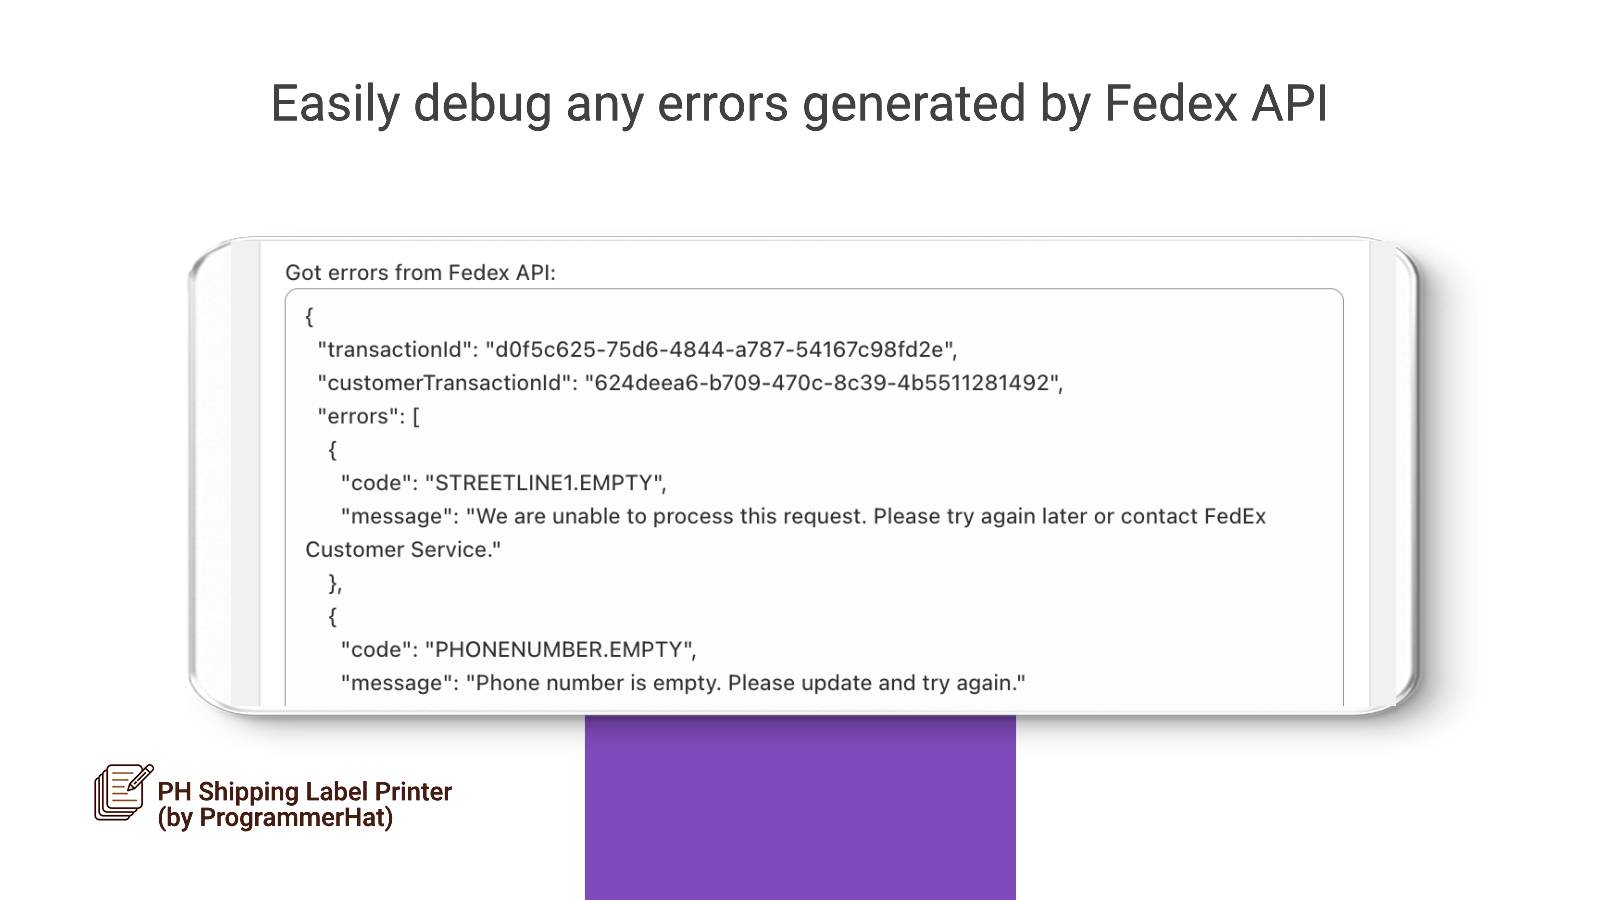 Depure facilmente quaisquer erros retornados pela API Fedex.